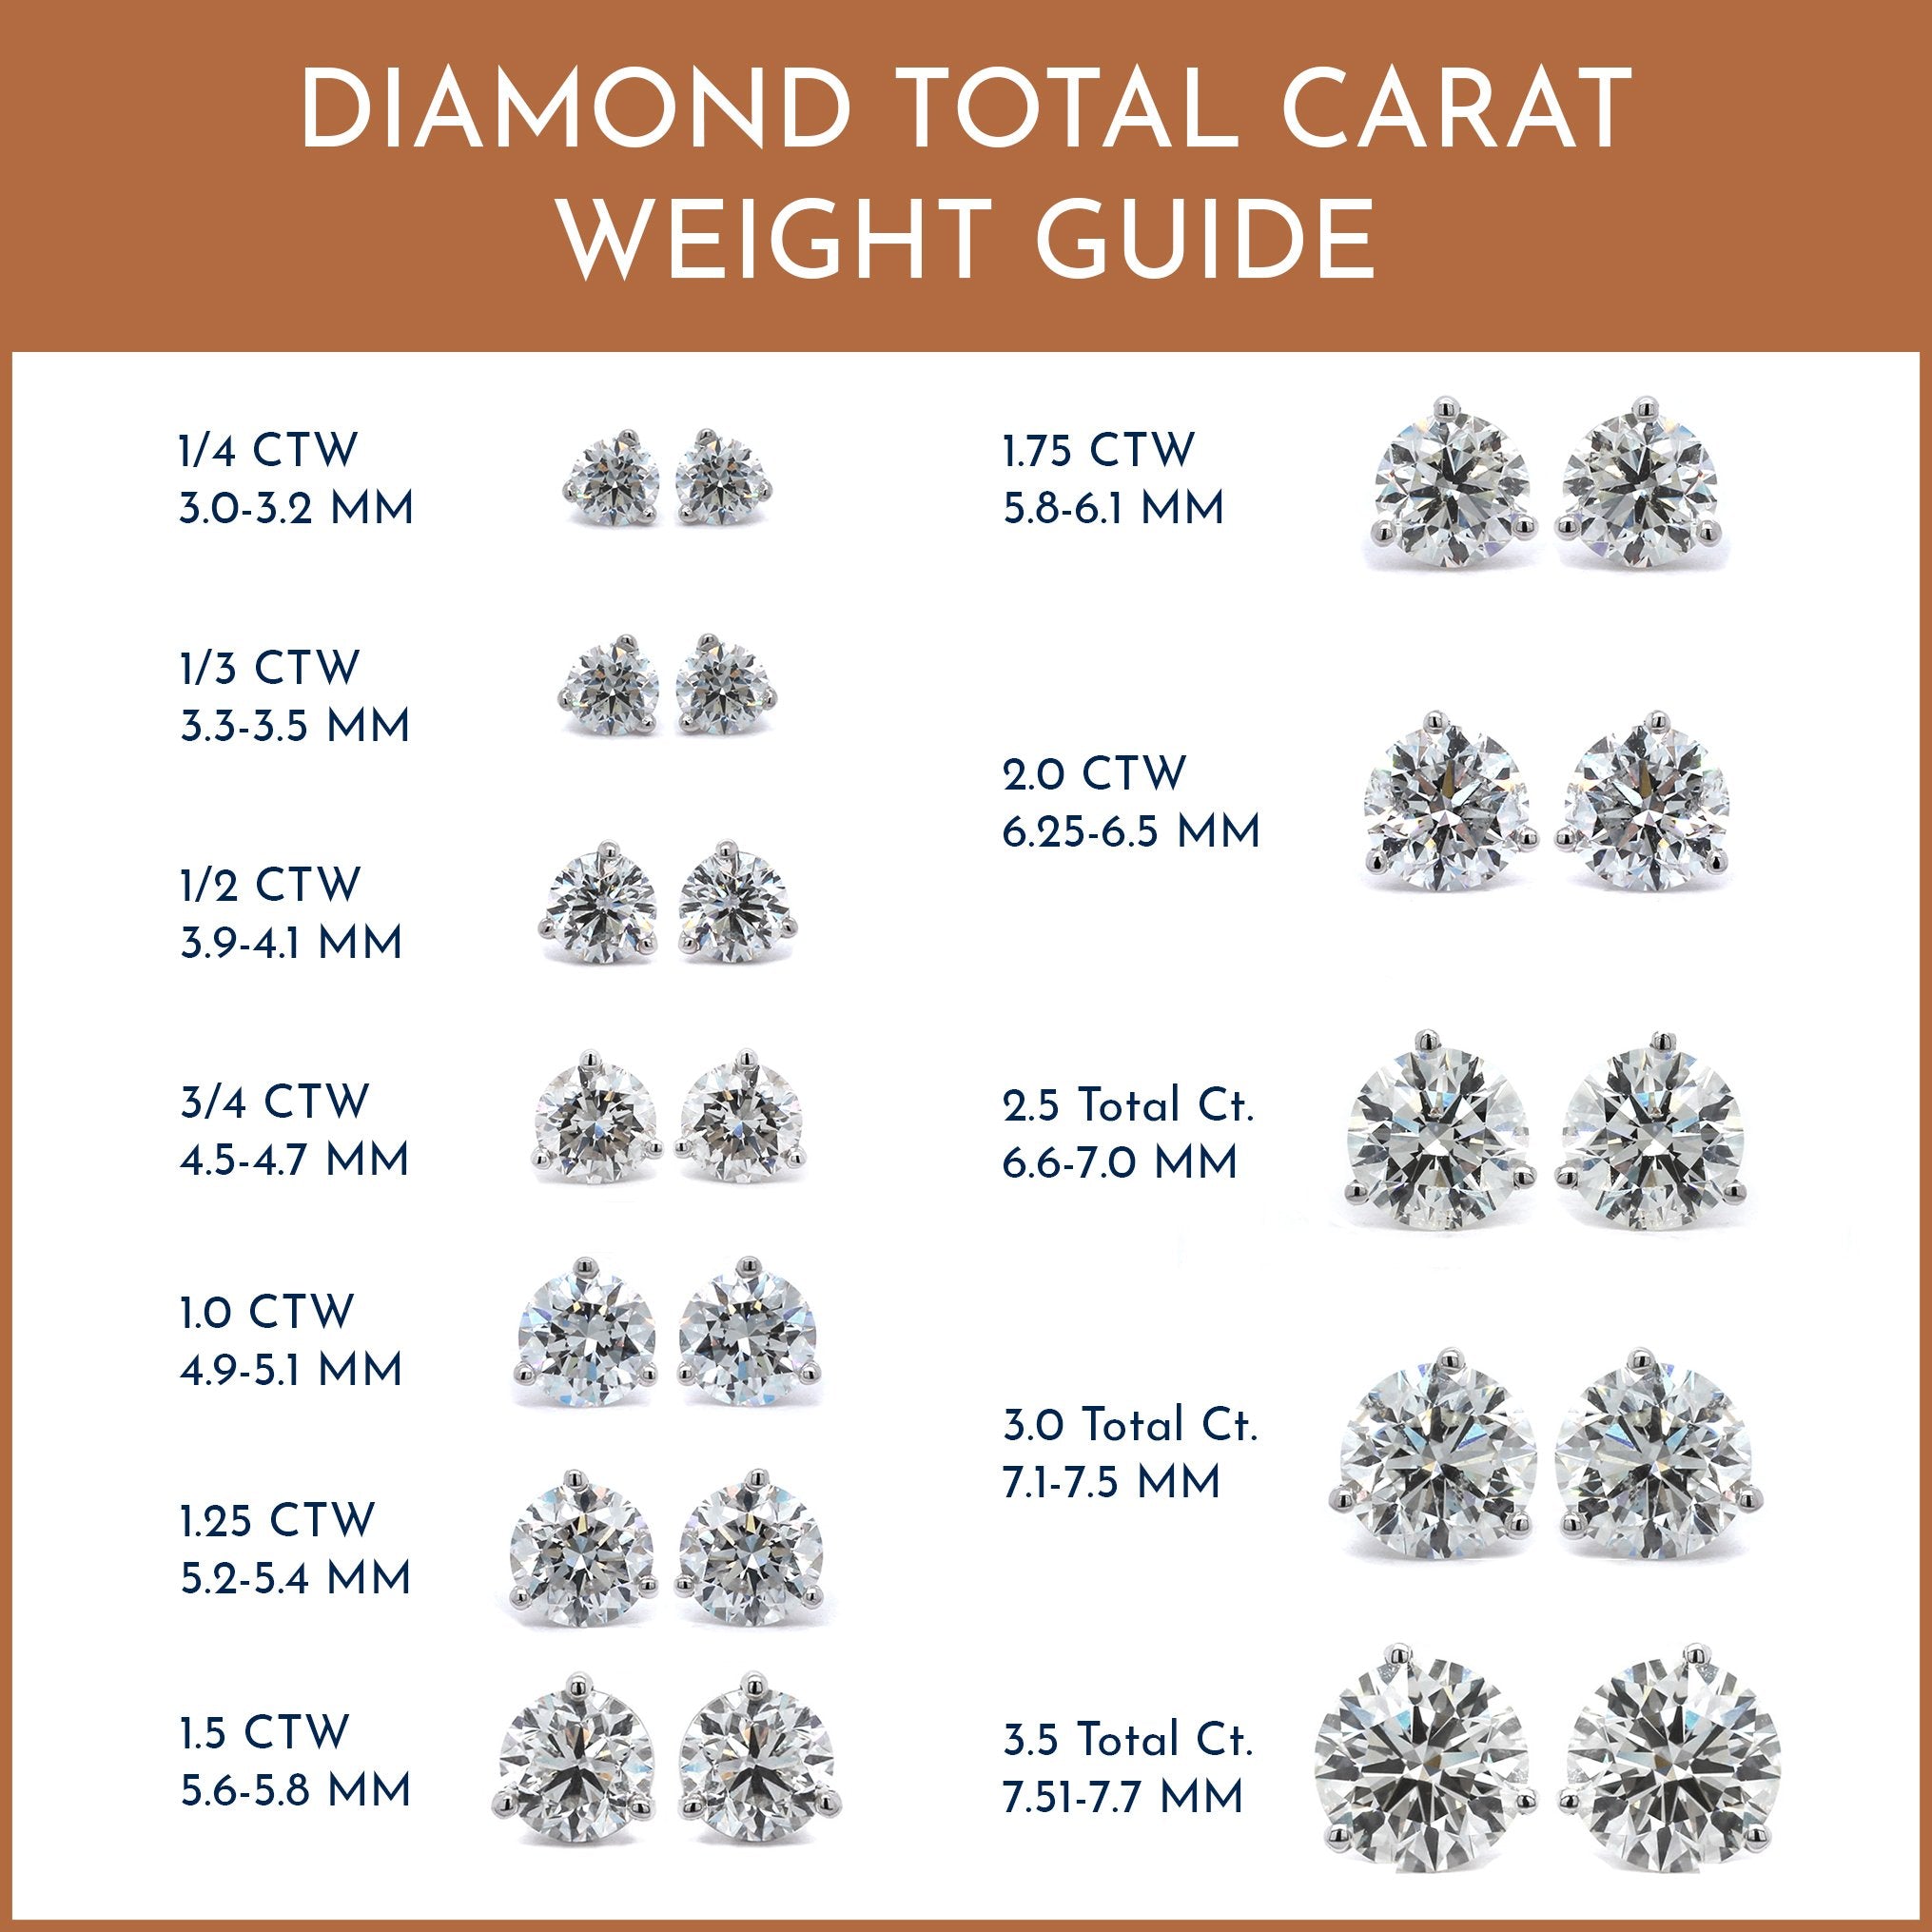 14K White Gold 1/3CTW Diamond Stud Earrings